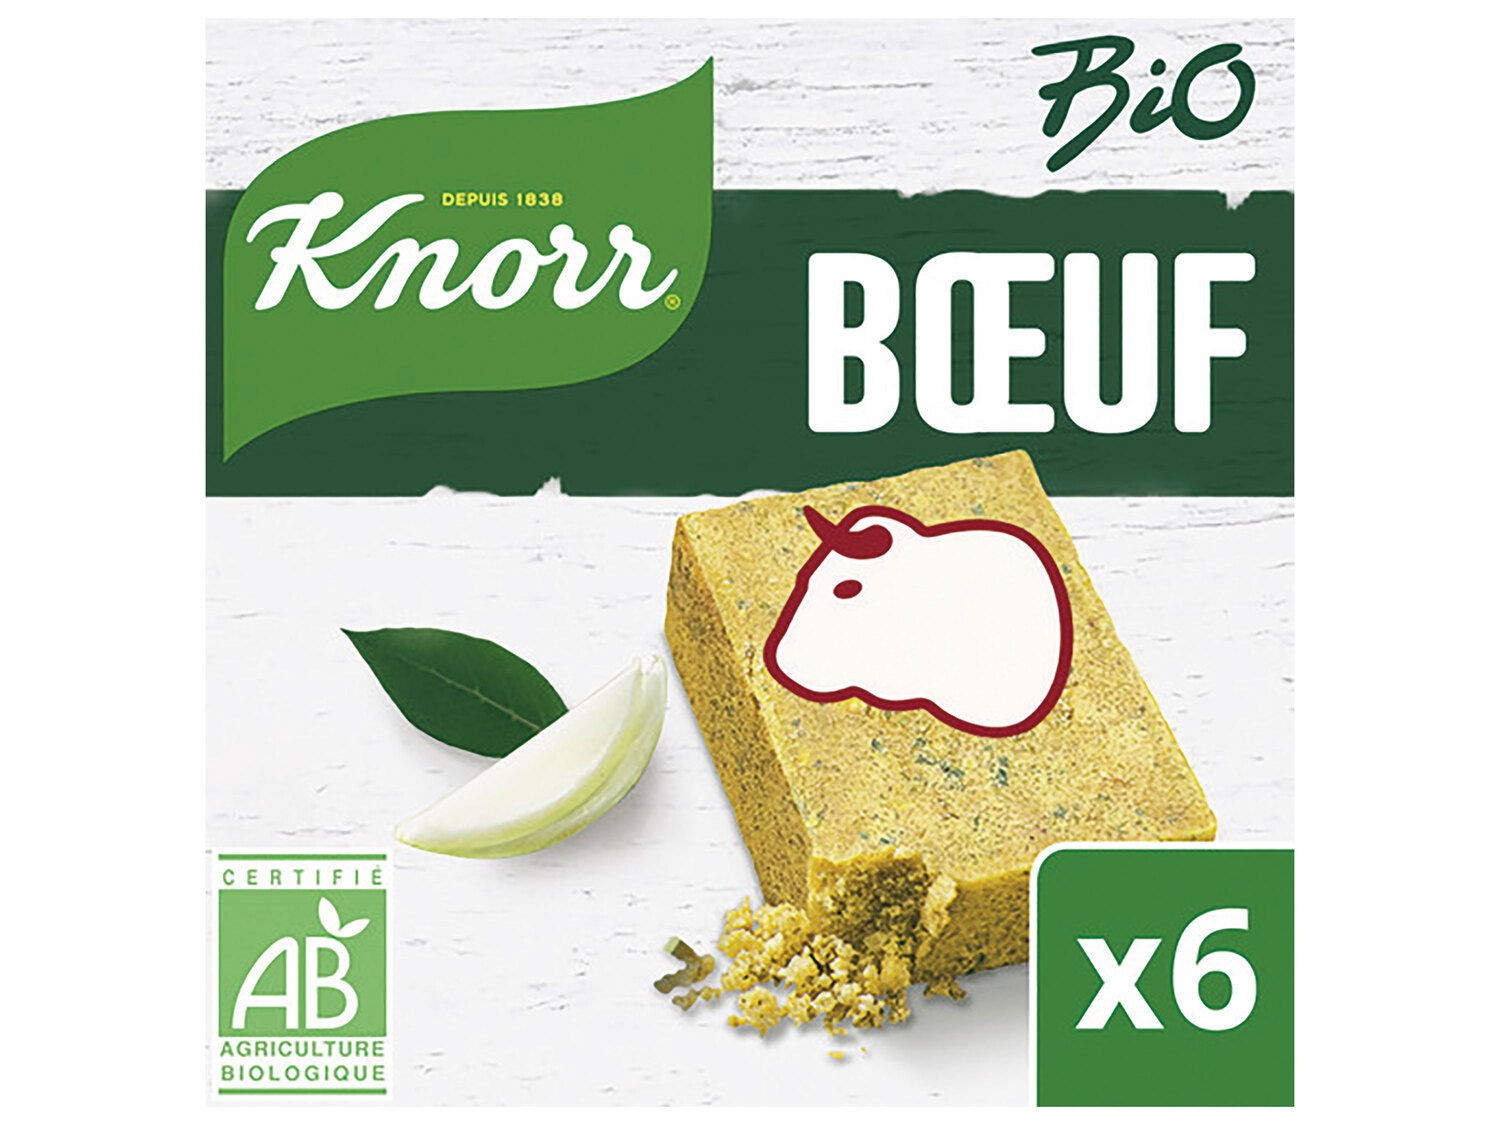 Knorr bouillon Bio , le prix 0.77 € 
- Le paquet de 60 g : 1,15 € (1 kg = 19,17 ...